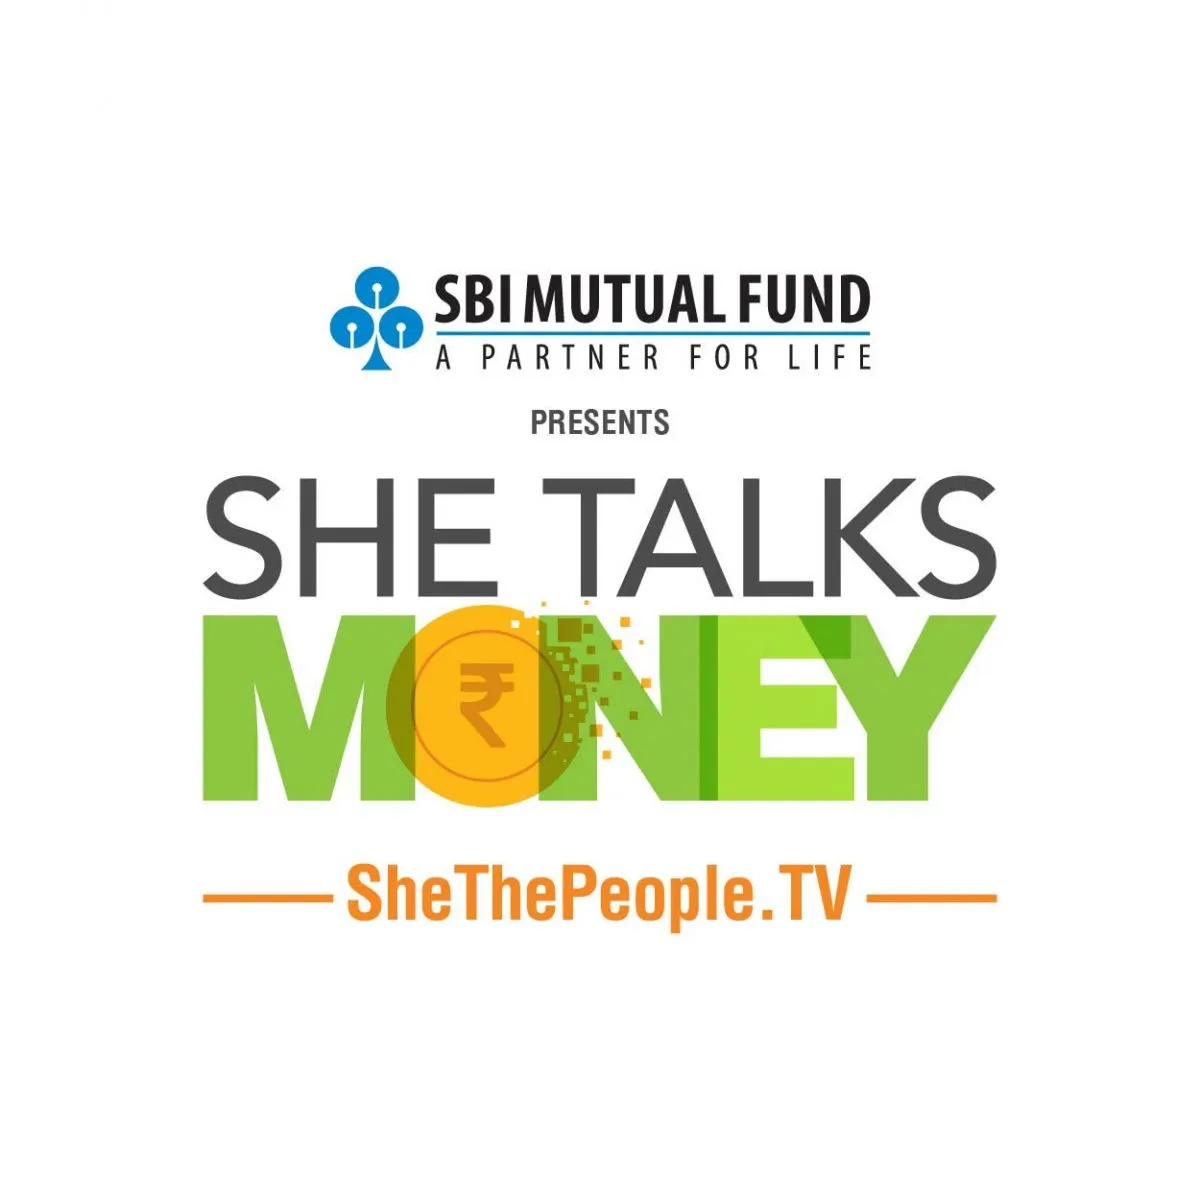 She Talks Money SBI Mutual Funds for Women